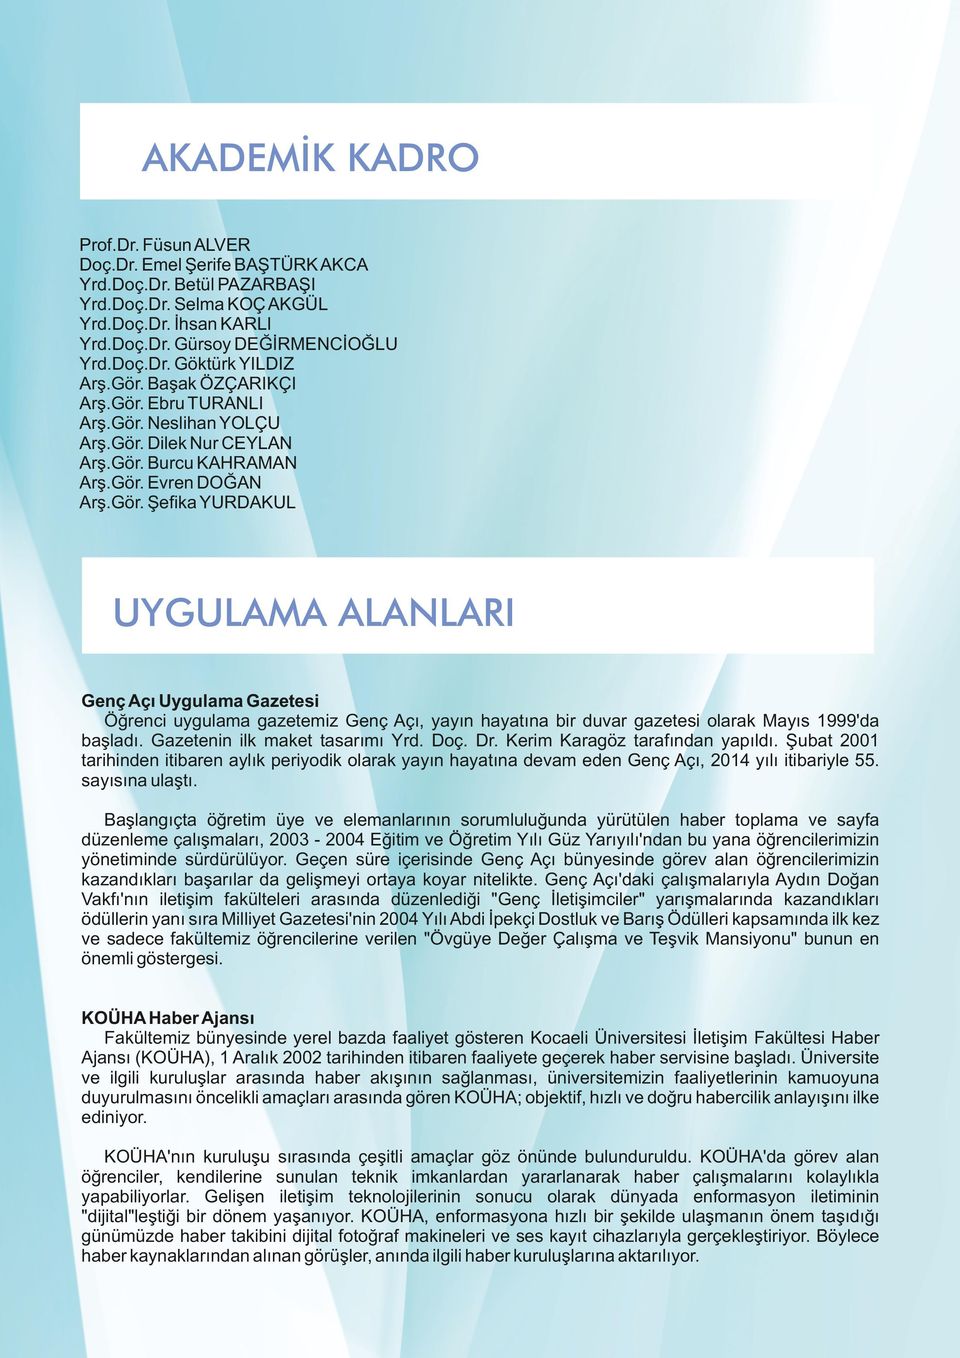 Gazetenin ilk maket tasarımı Yrd. Doç. Dr. Kerim Karagöz tarafından yapıldı. Şubat 2001 tarihinden itibaren aylık periyodik olarak yayın hayatına devam eden Genç Açı, 2014 yılı itibariyle 55.